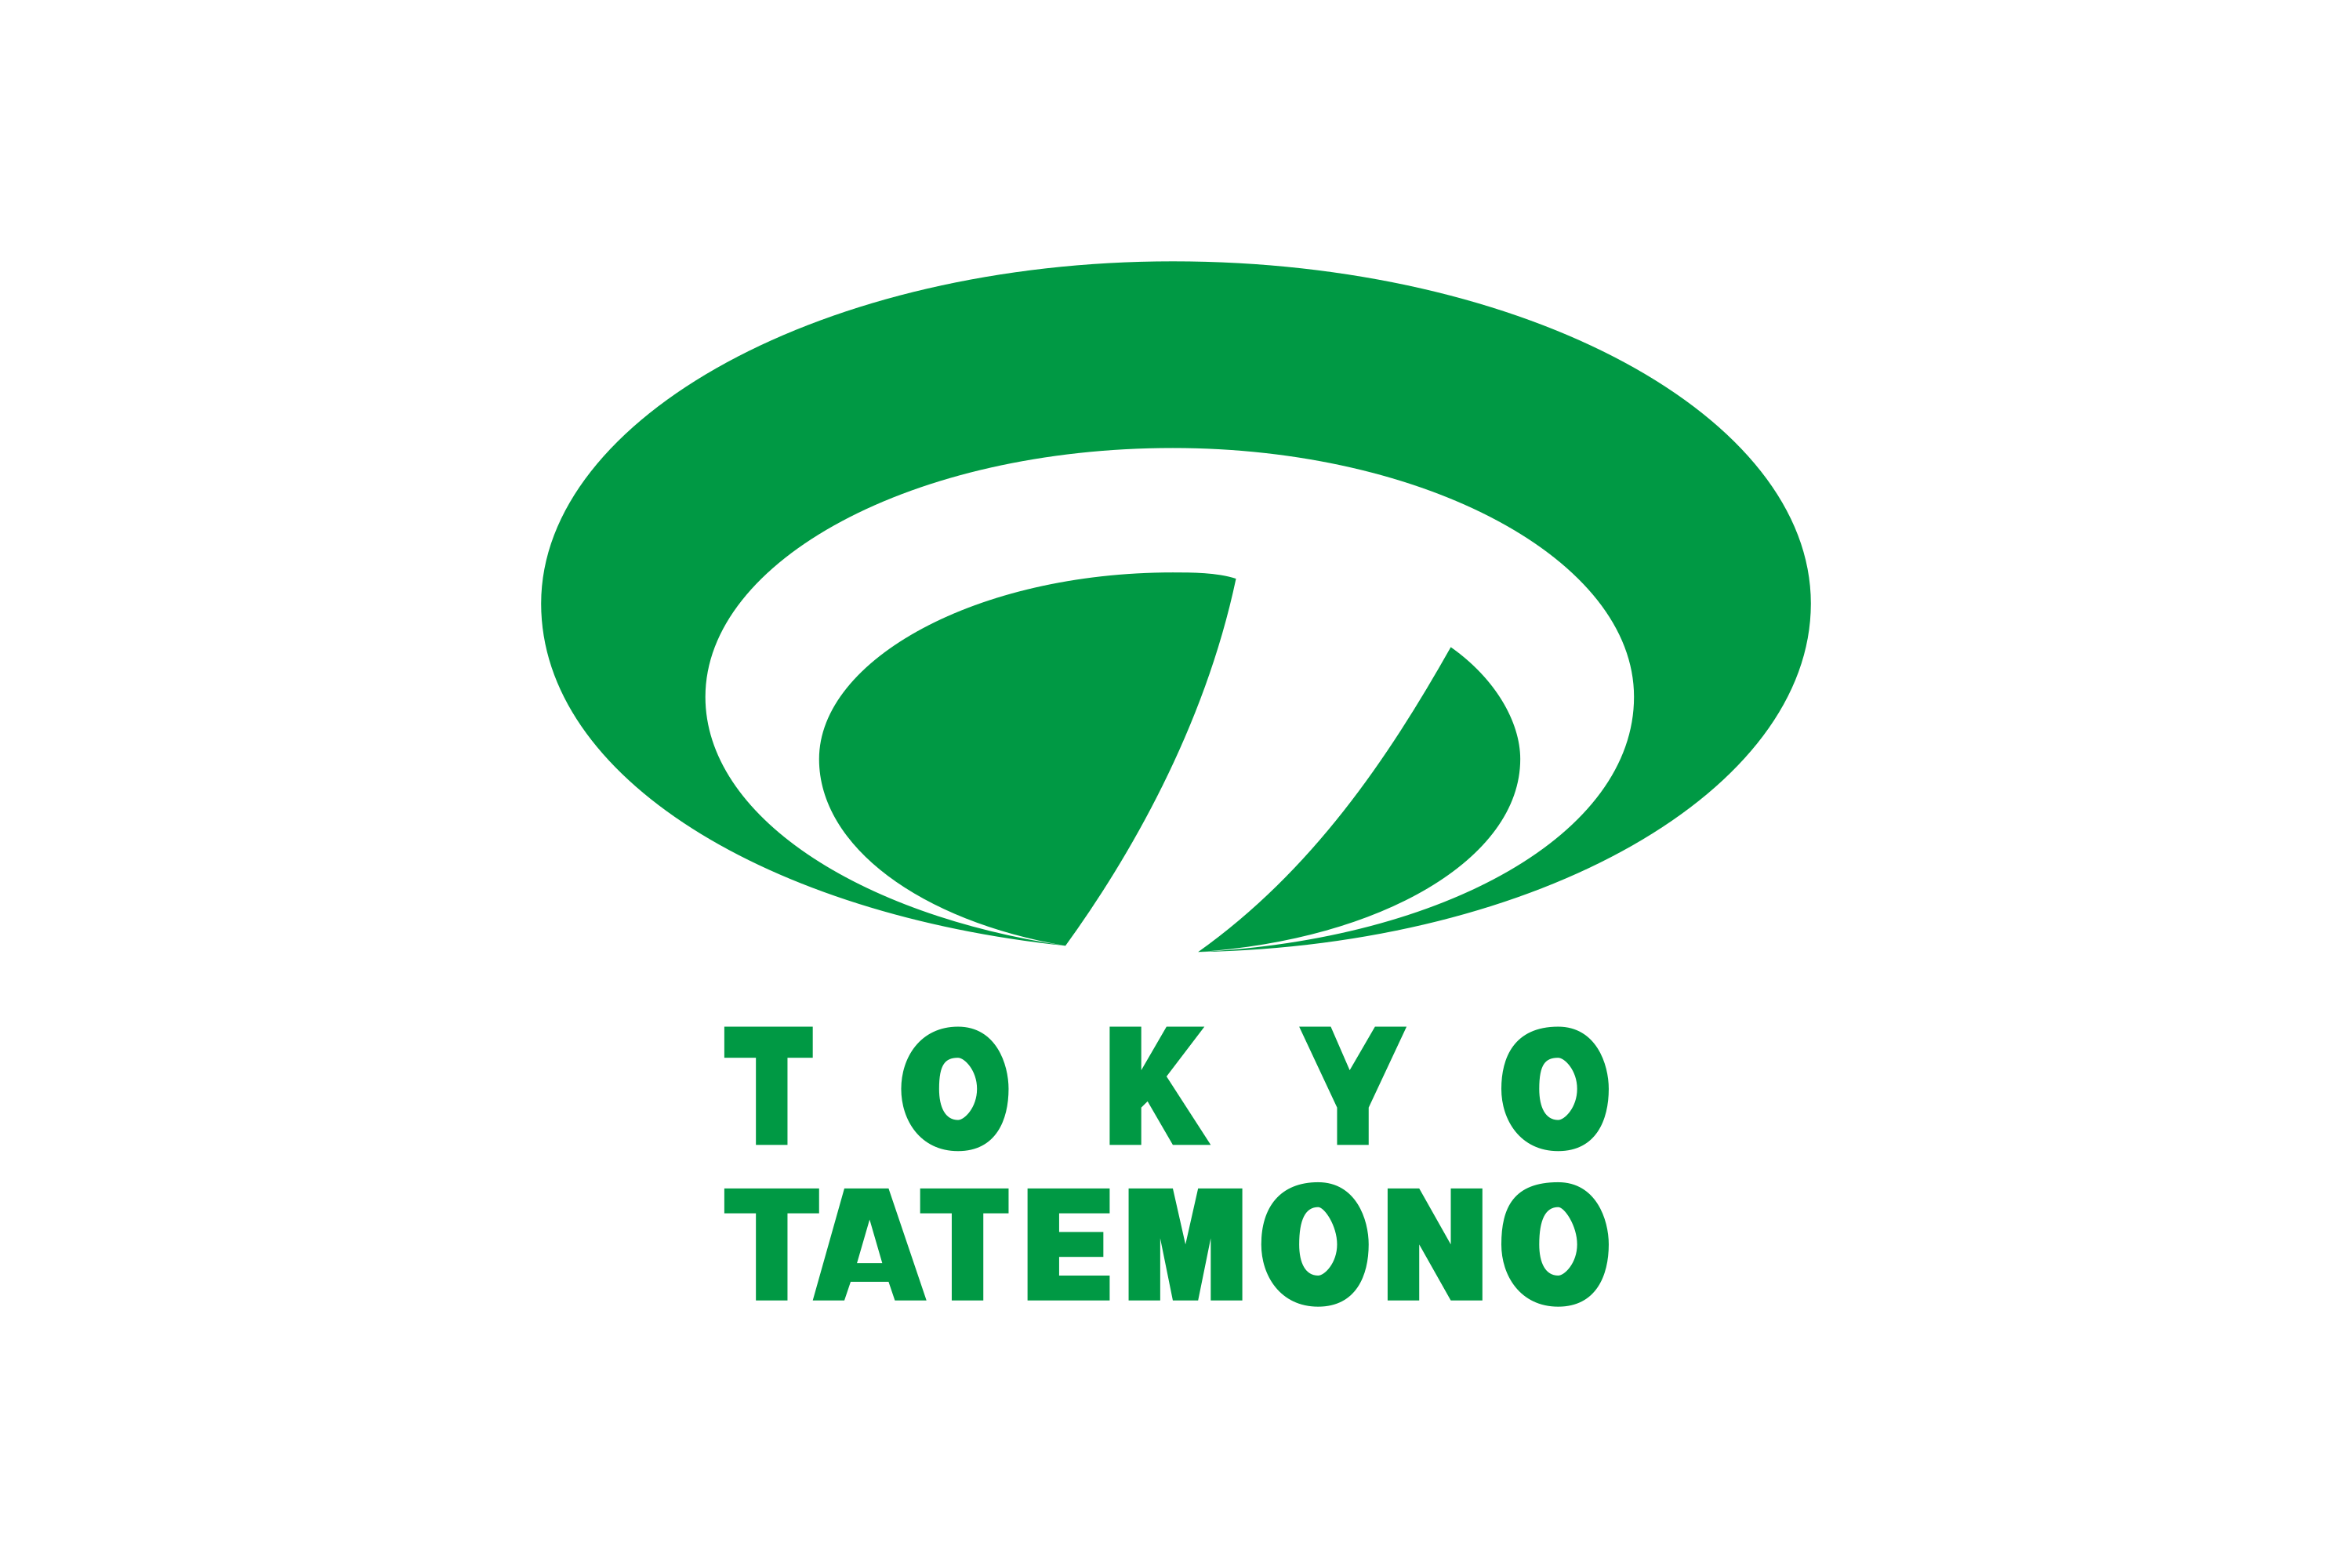 Tokyo Tatemono Logo